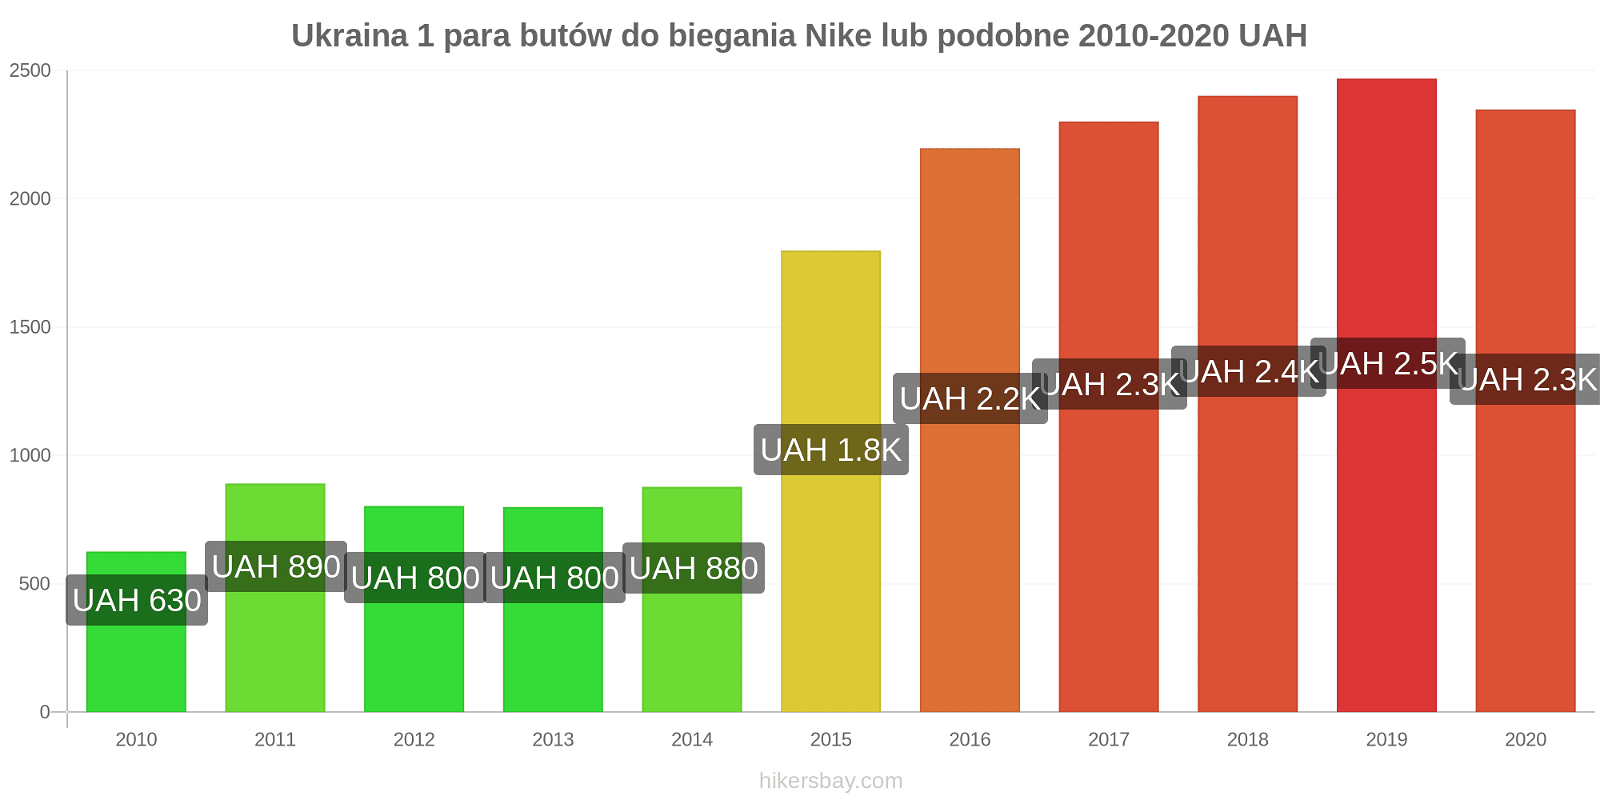 Ukraina zmiany cen 1 para butów do biegania Nike lub podobne hikersbay.com